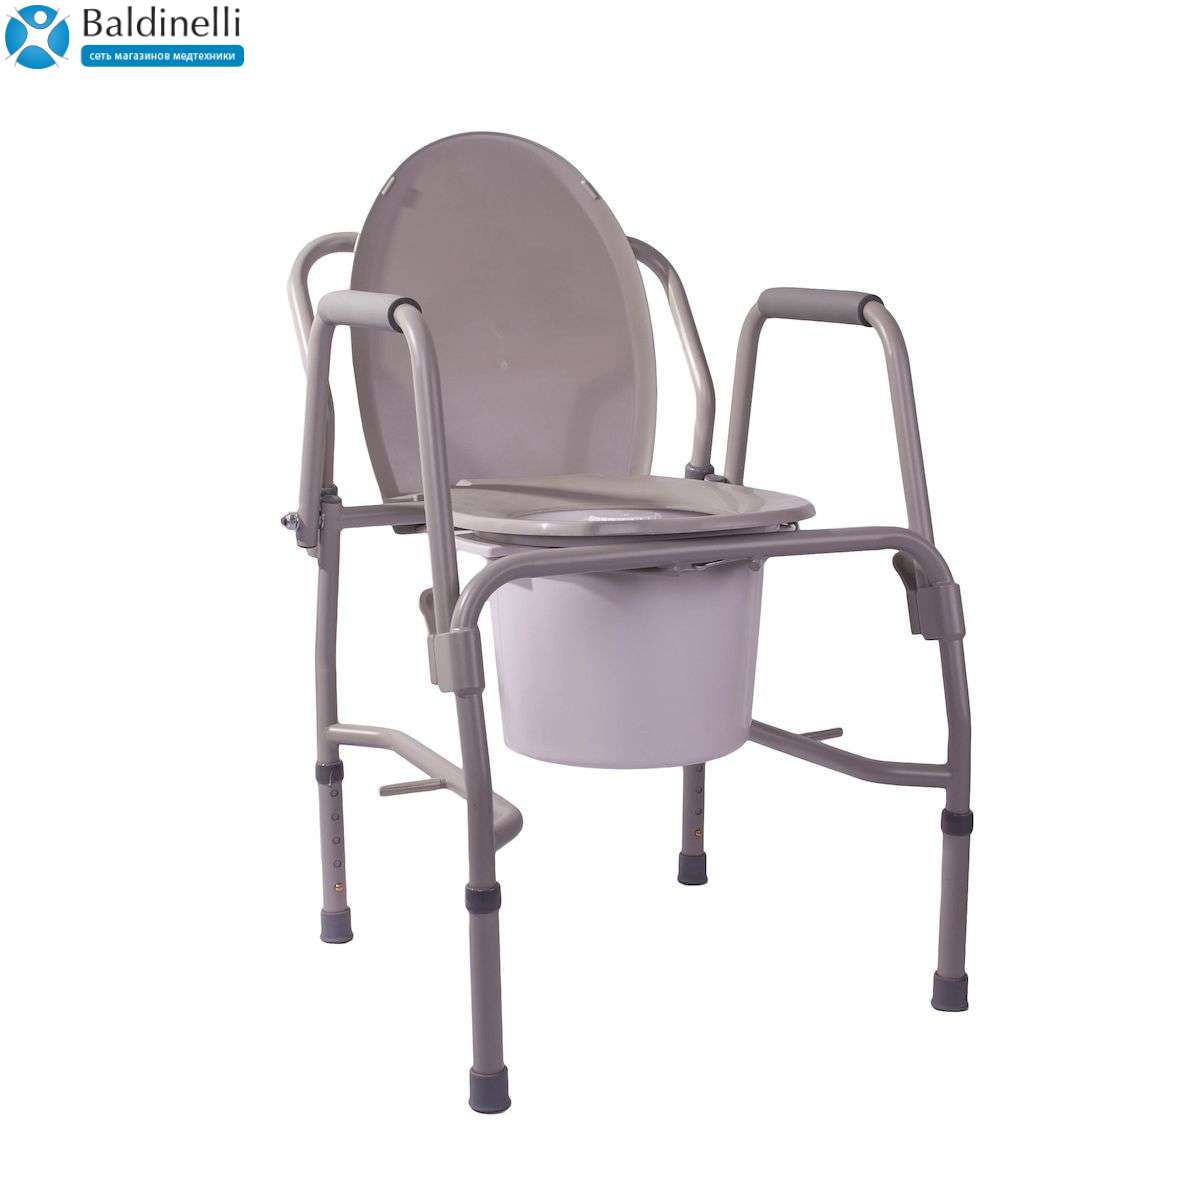 Посилений стілець-туалет з відкидним поруччям OSD-RPM-68680D